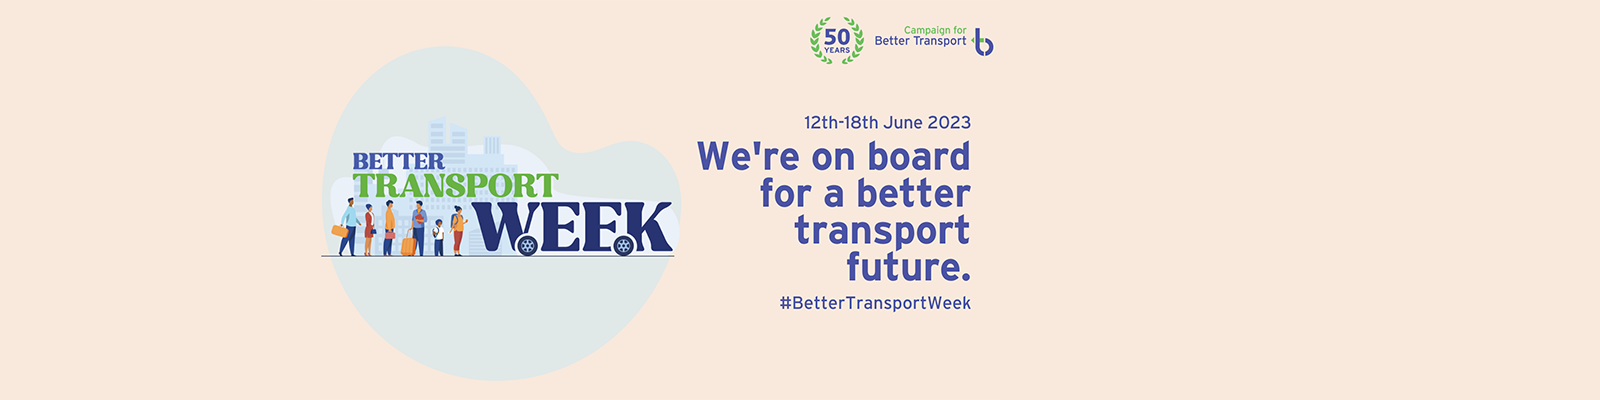 Better Transport Week banner